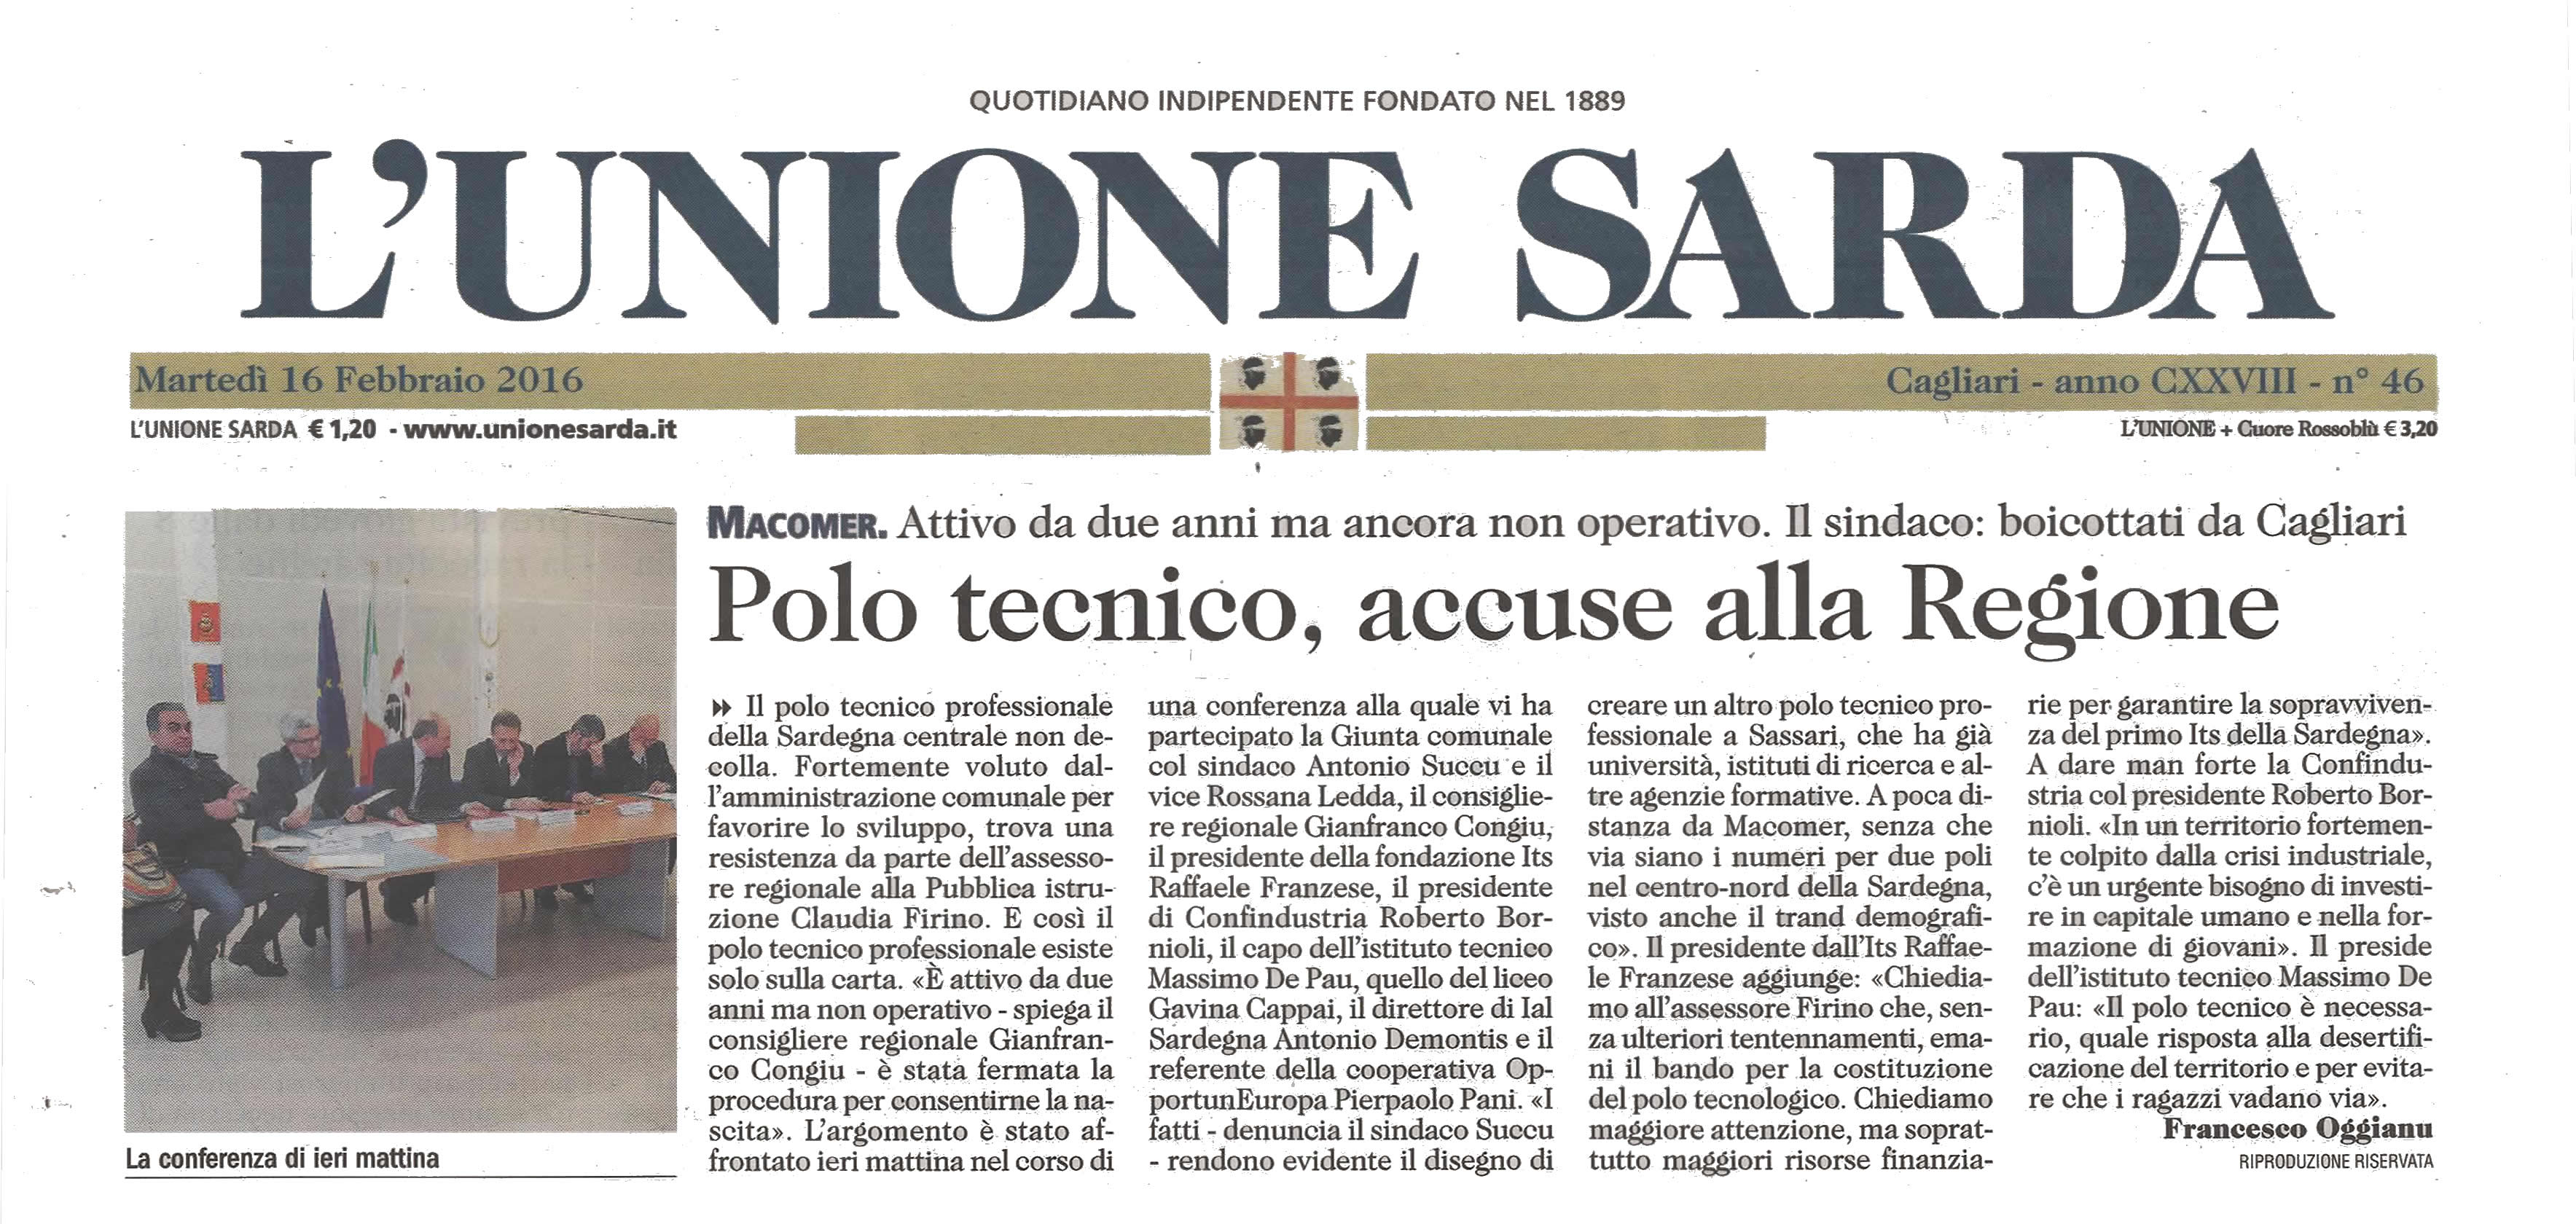 16.02.2016 - L'Unione Sarda - Polo Tecnico, accuse alla Regione.jpeg